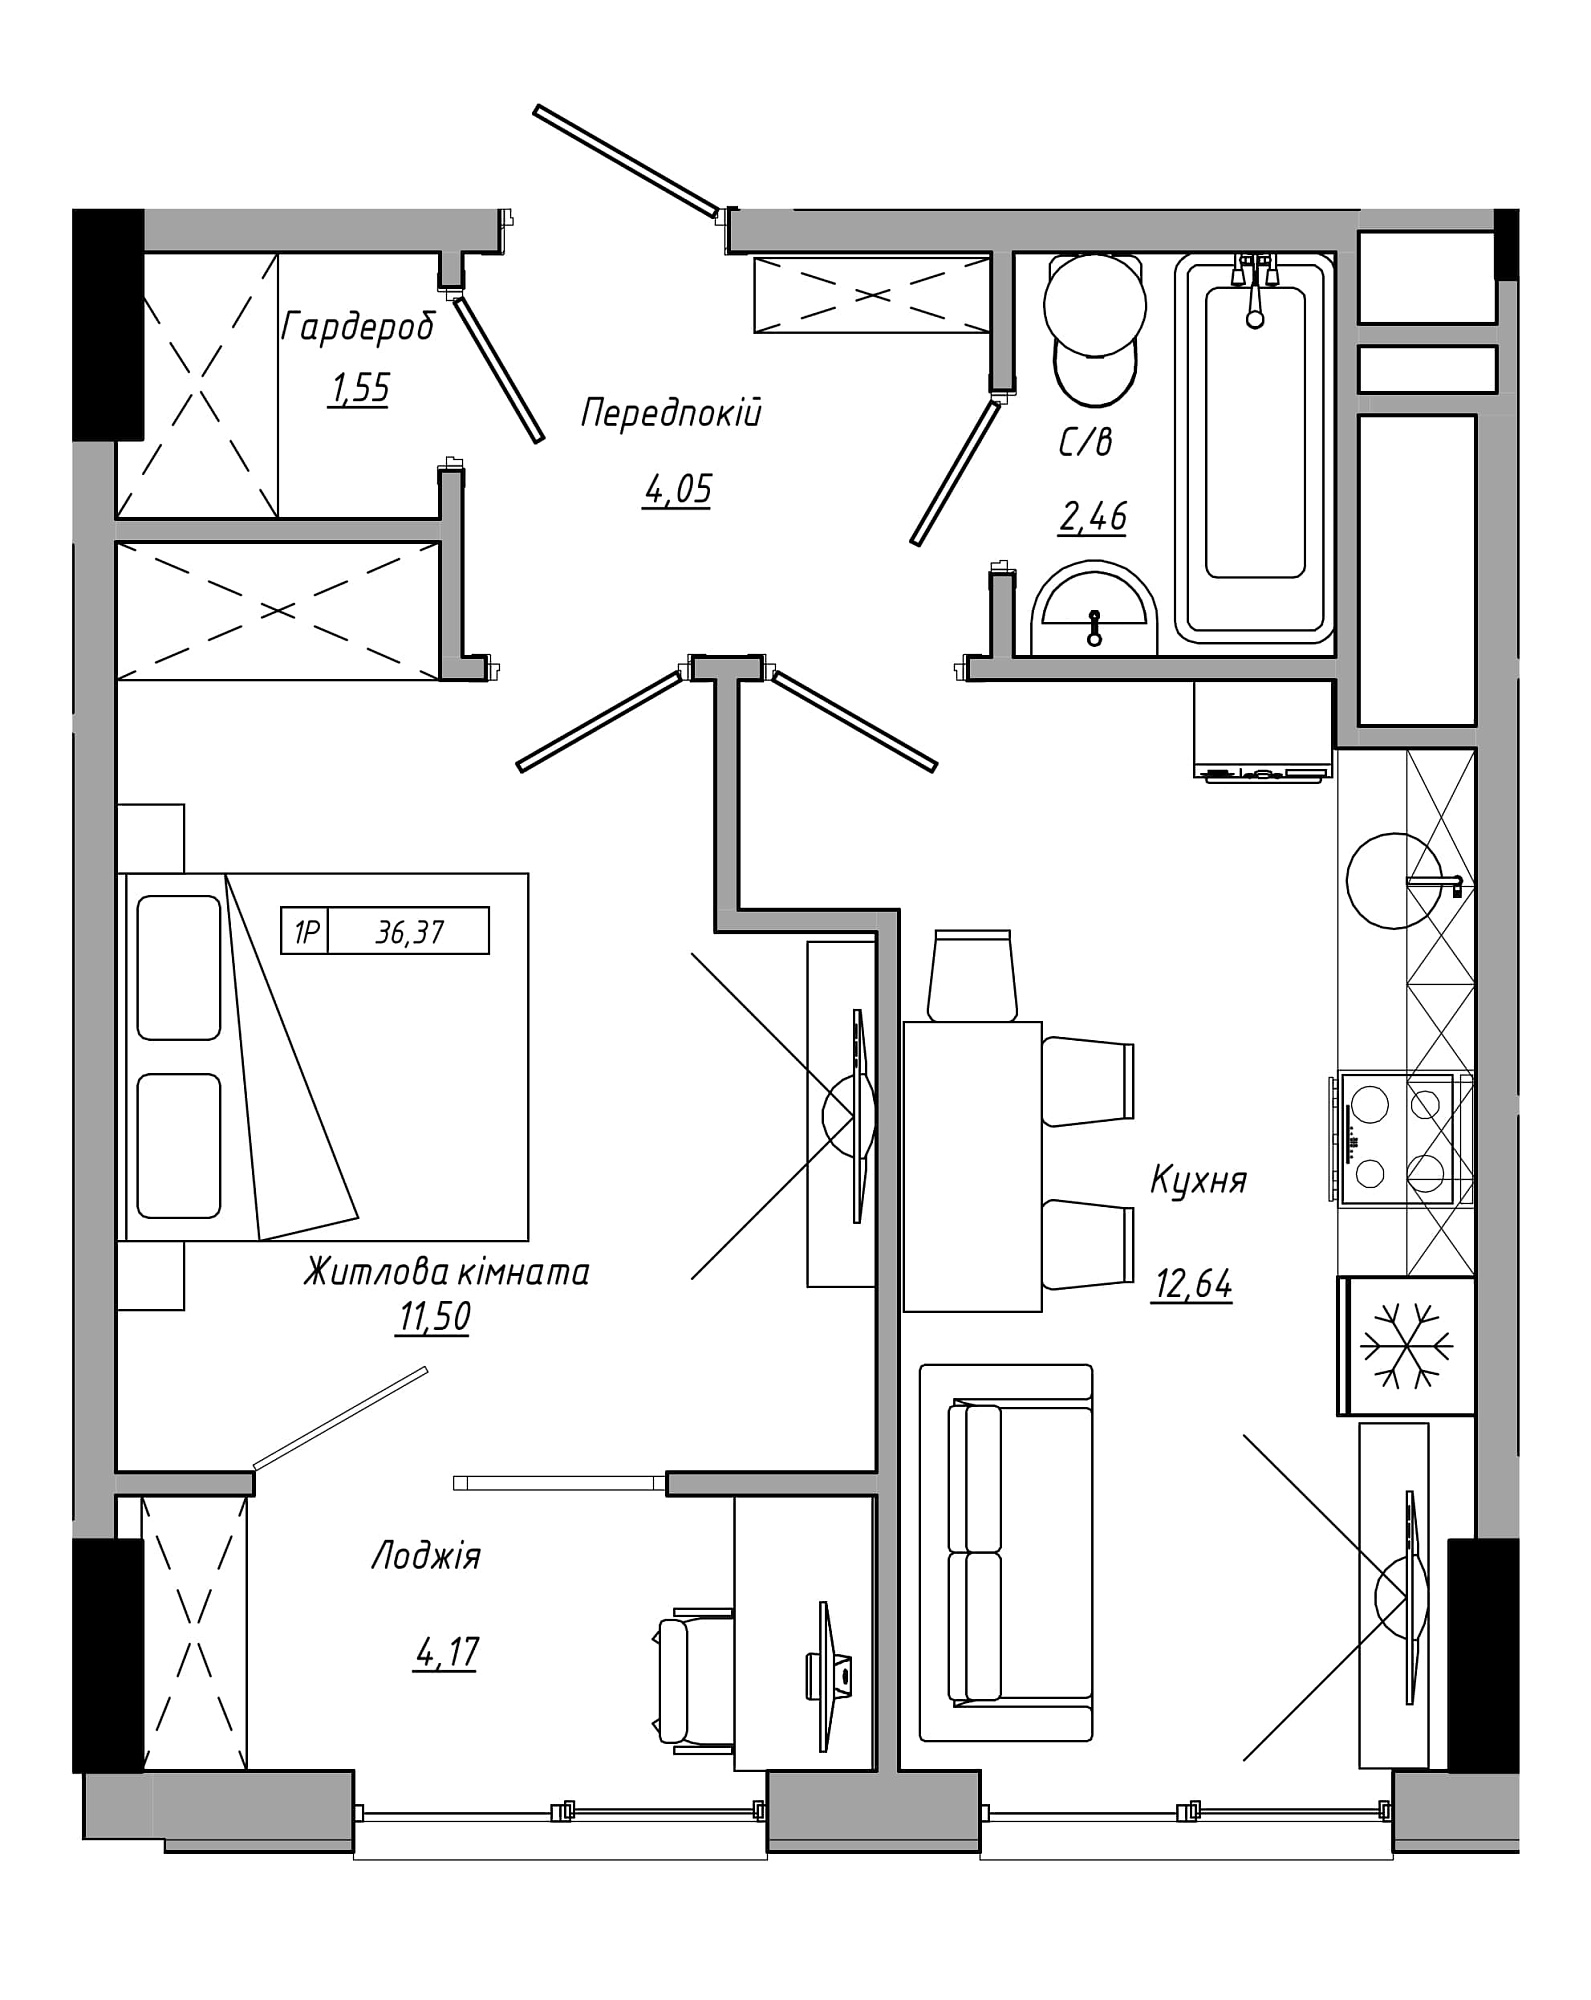 Планировка 1-к квартира площей 36.37м2, AB-21-12/00020.